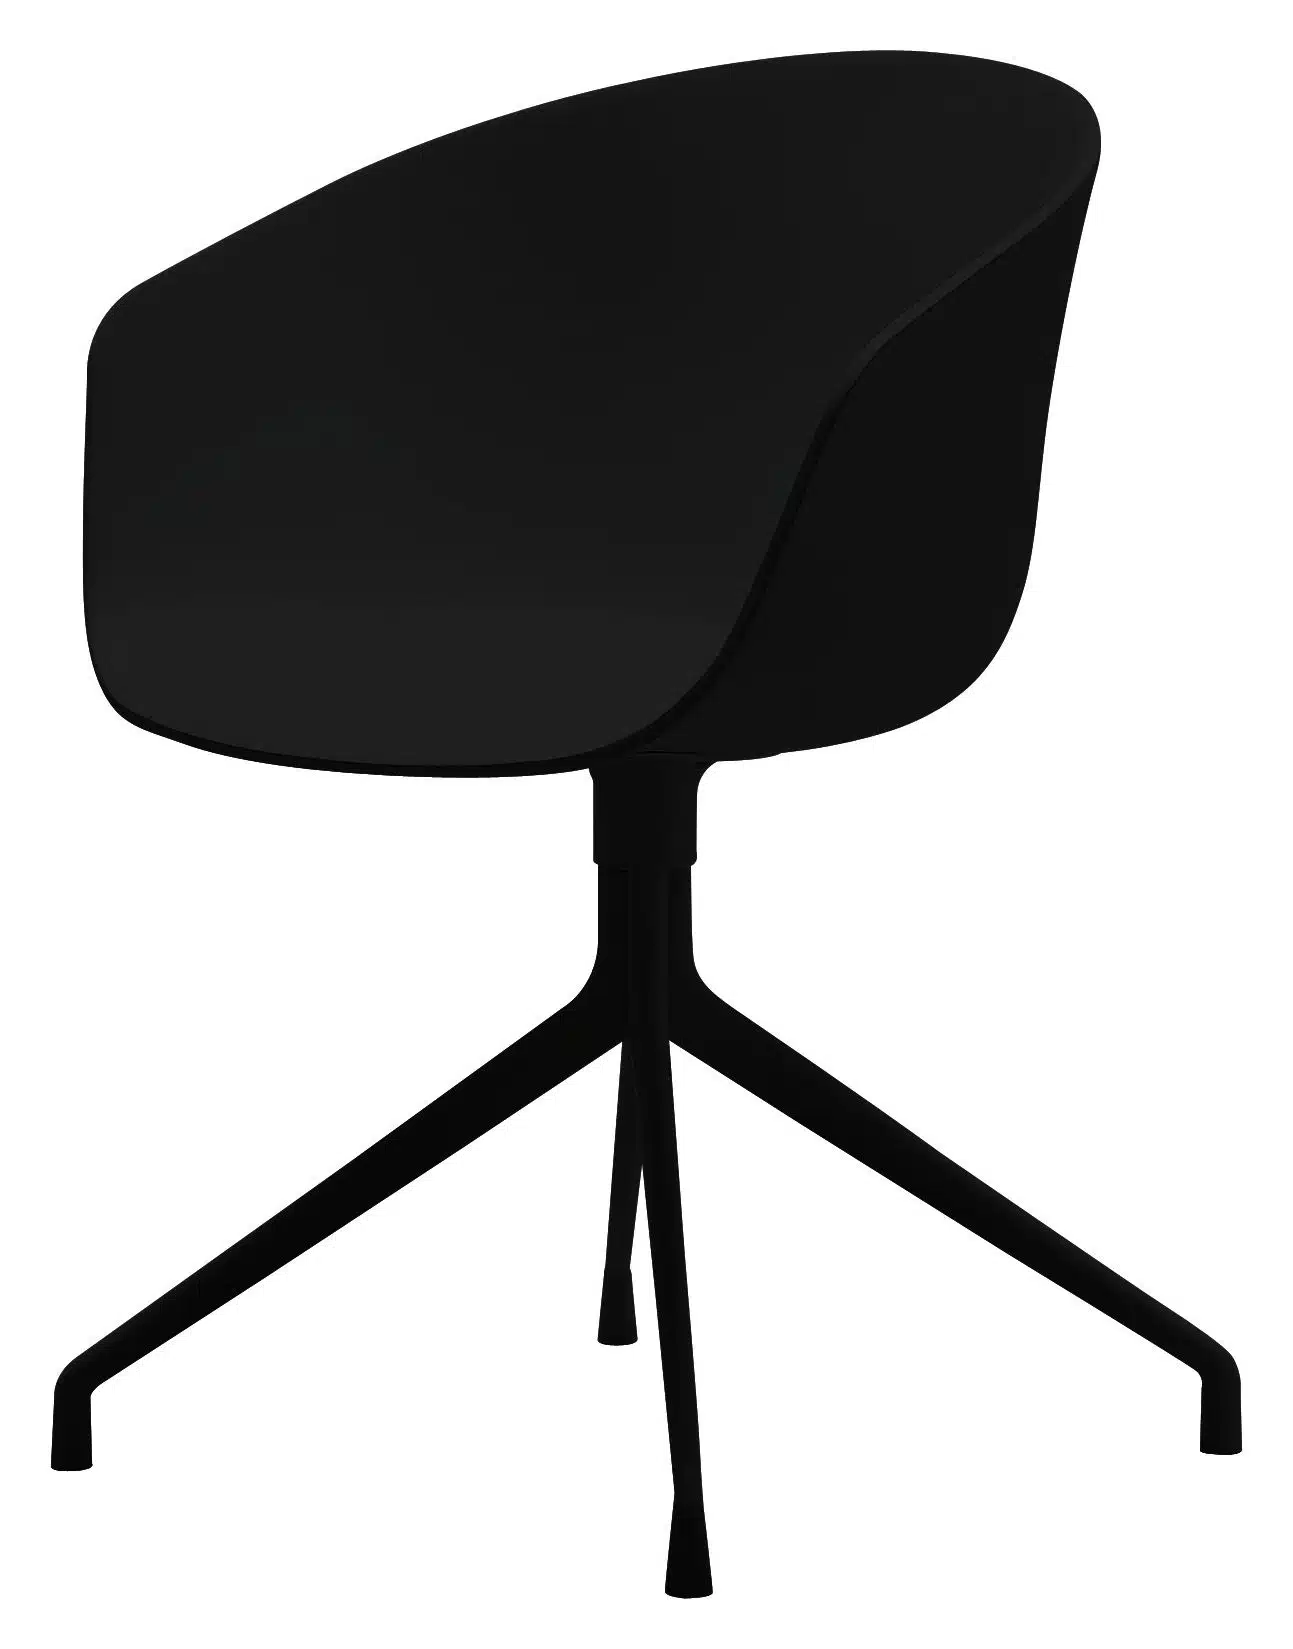 Le fauteuil about a chair de Hay